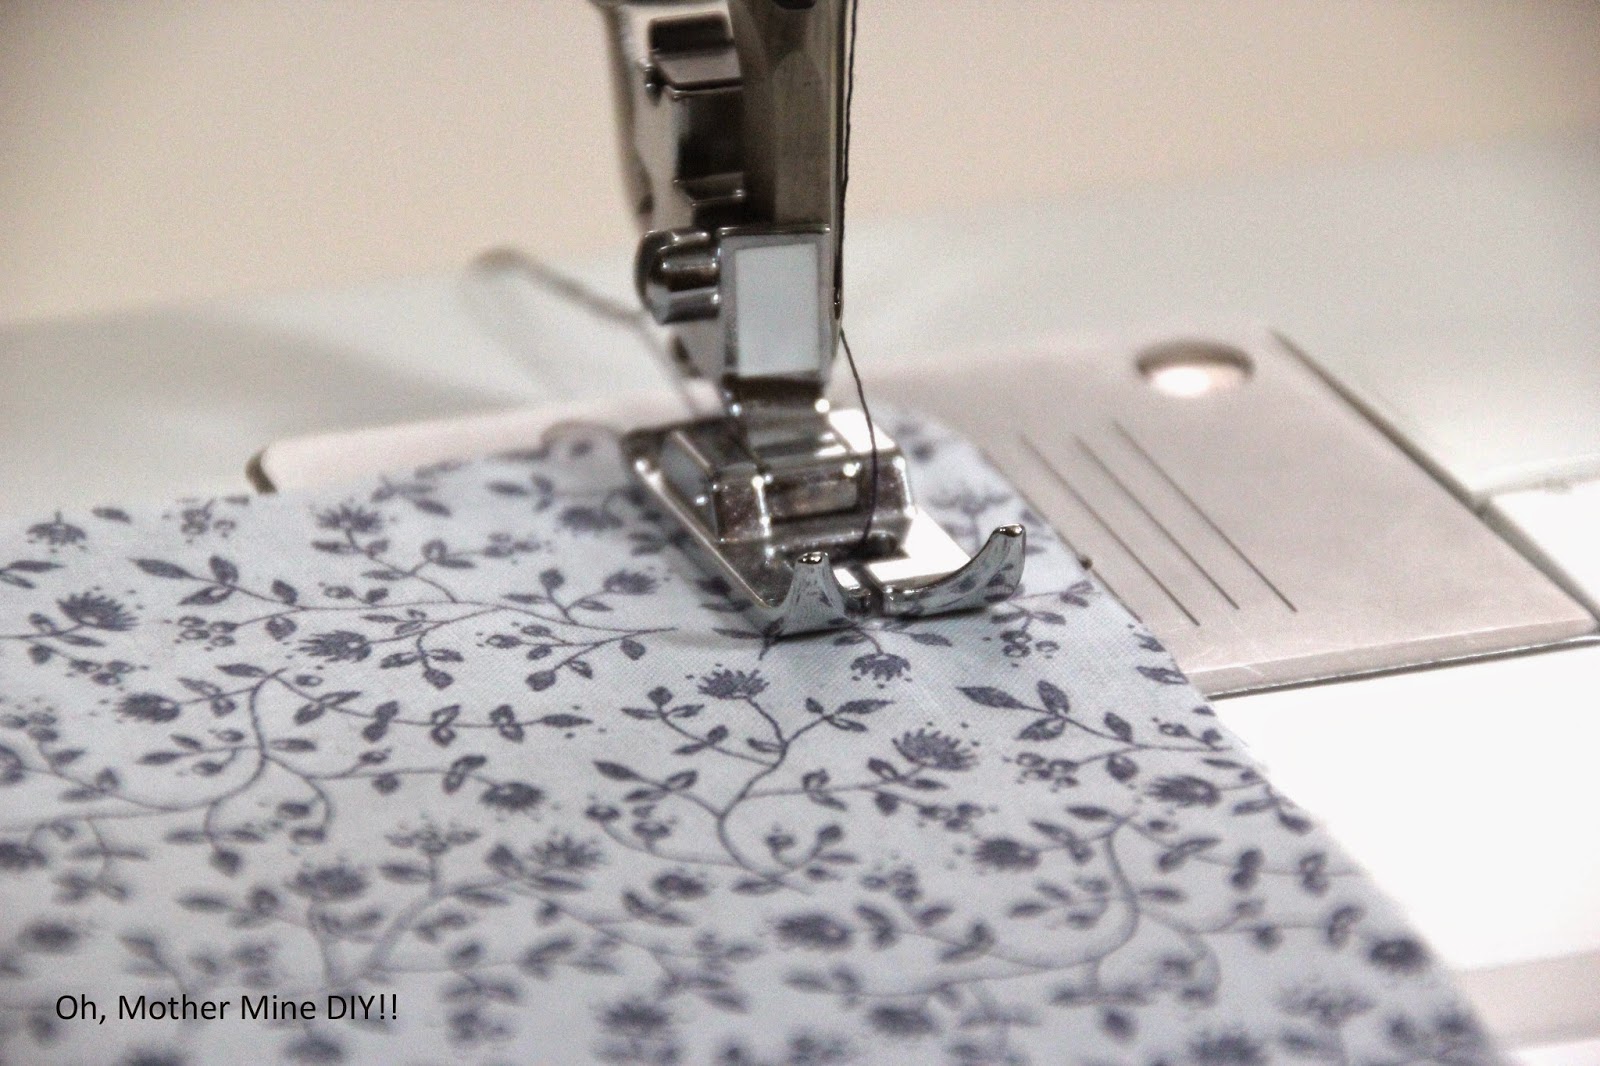 clases de costura gratis online aprender a coser. Blog de costura y diy